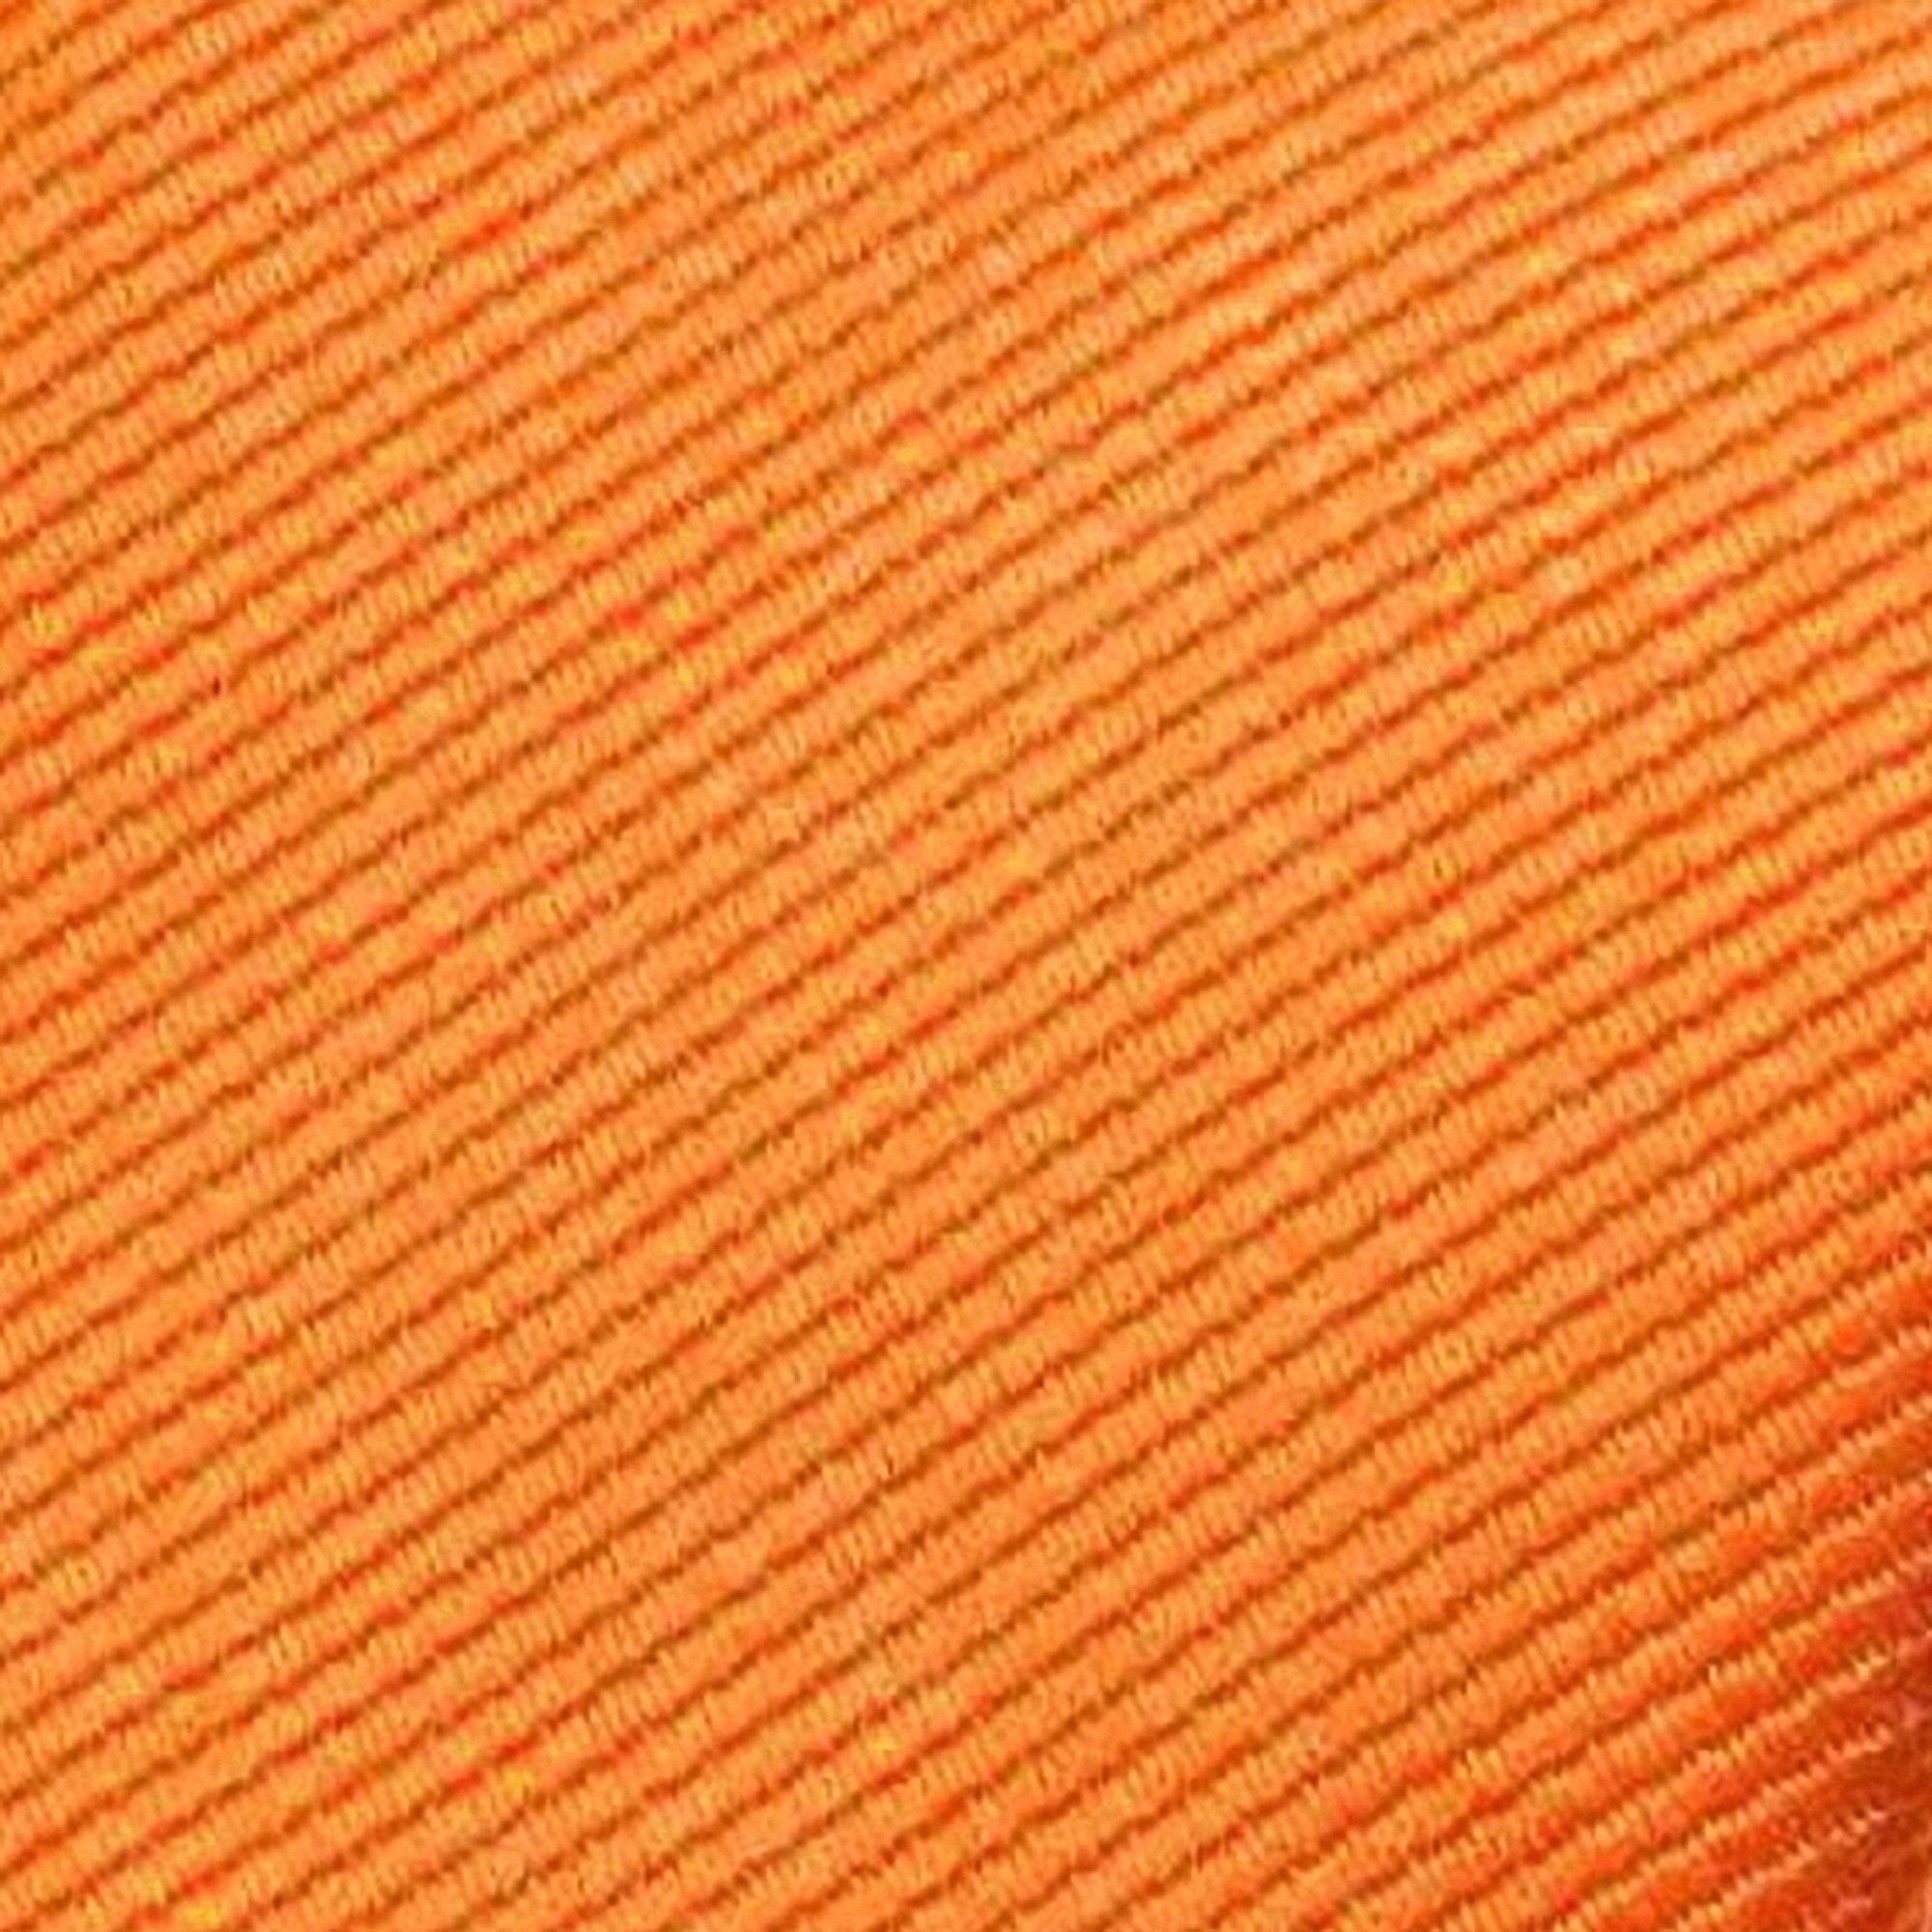 GASSANI Krawatte Schmale Männer Feine In Geschenk-Box Rips Apricot Coral Slim-Fit Rippen Herren-Krawatte Männer-Schlips Streifen, Blech-Spardose, Business-Krawatte, Pastell-Orange Geschenkverpackung) Koralle Dose Gestreifte 2-St., Uni (set, Seide-Touch mit